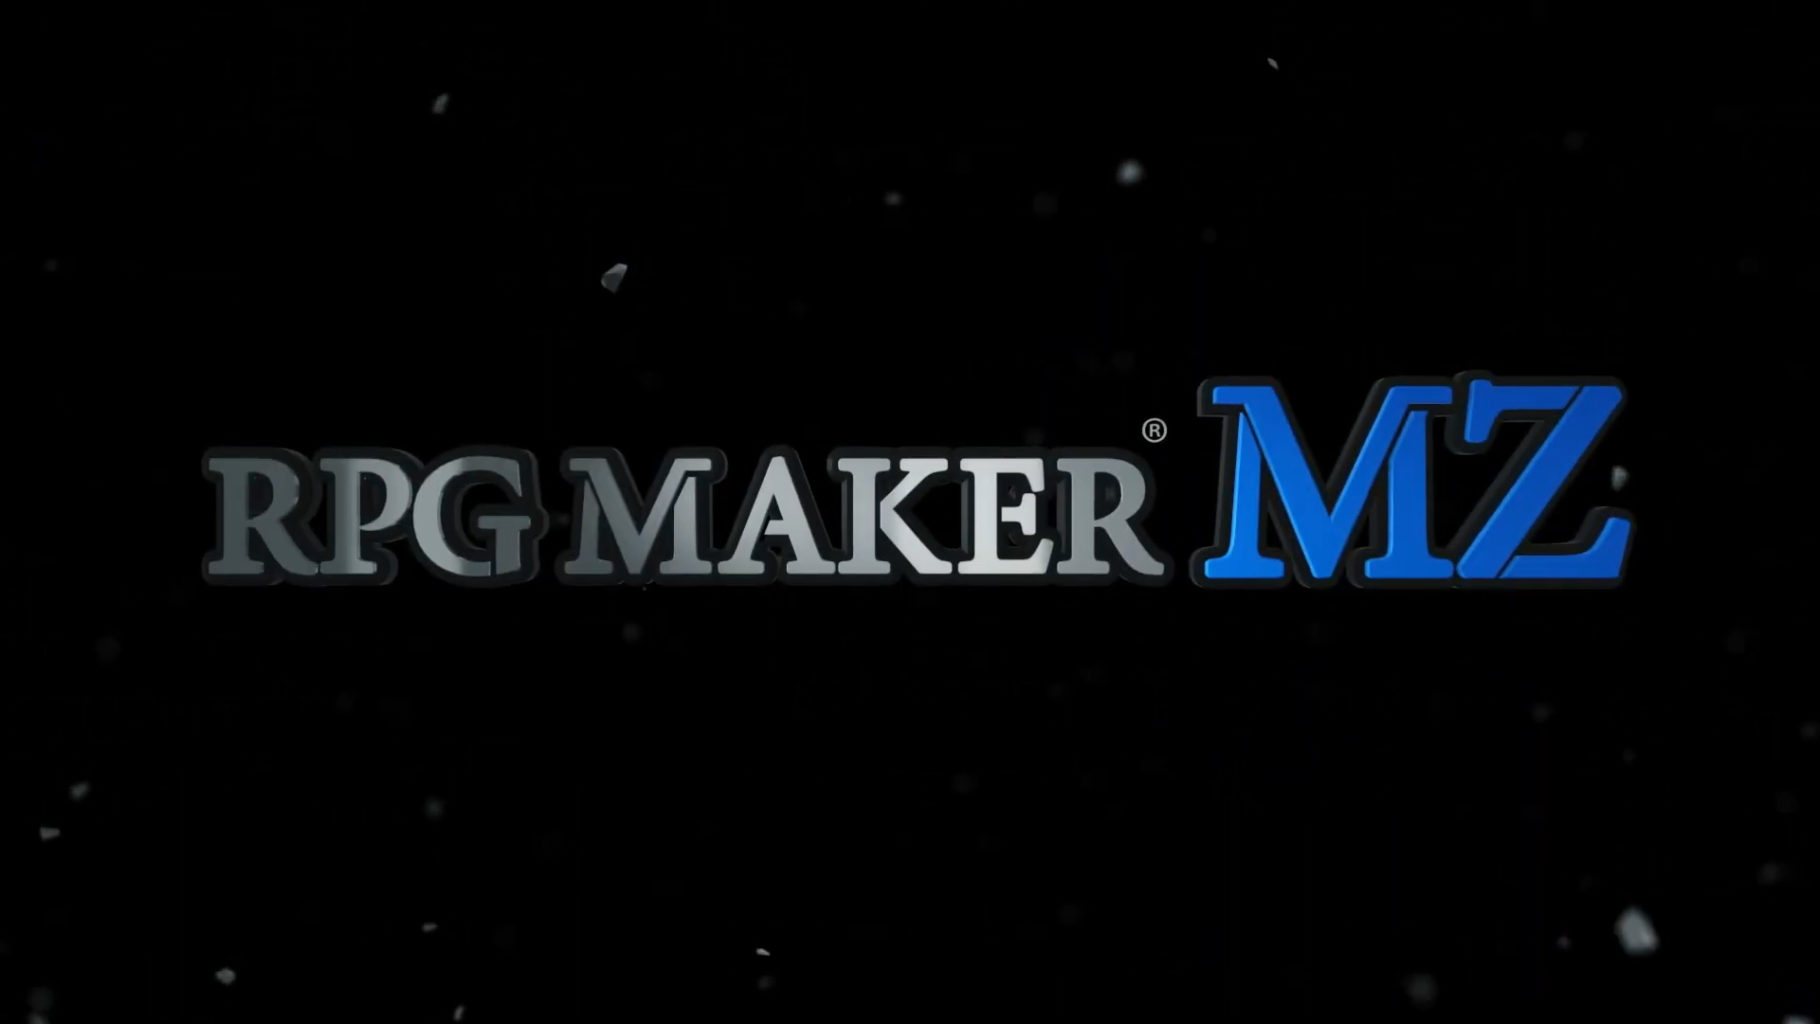 Rpg Maker MZ